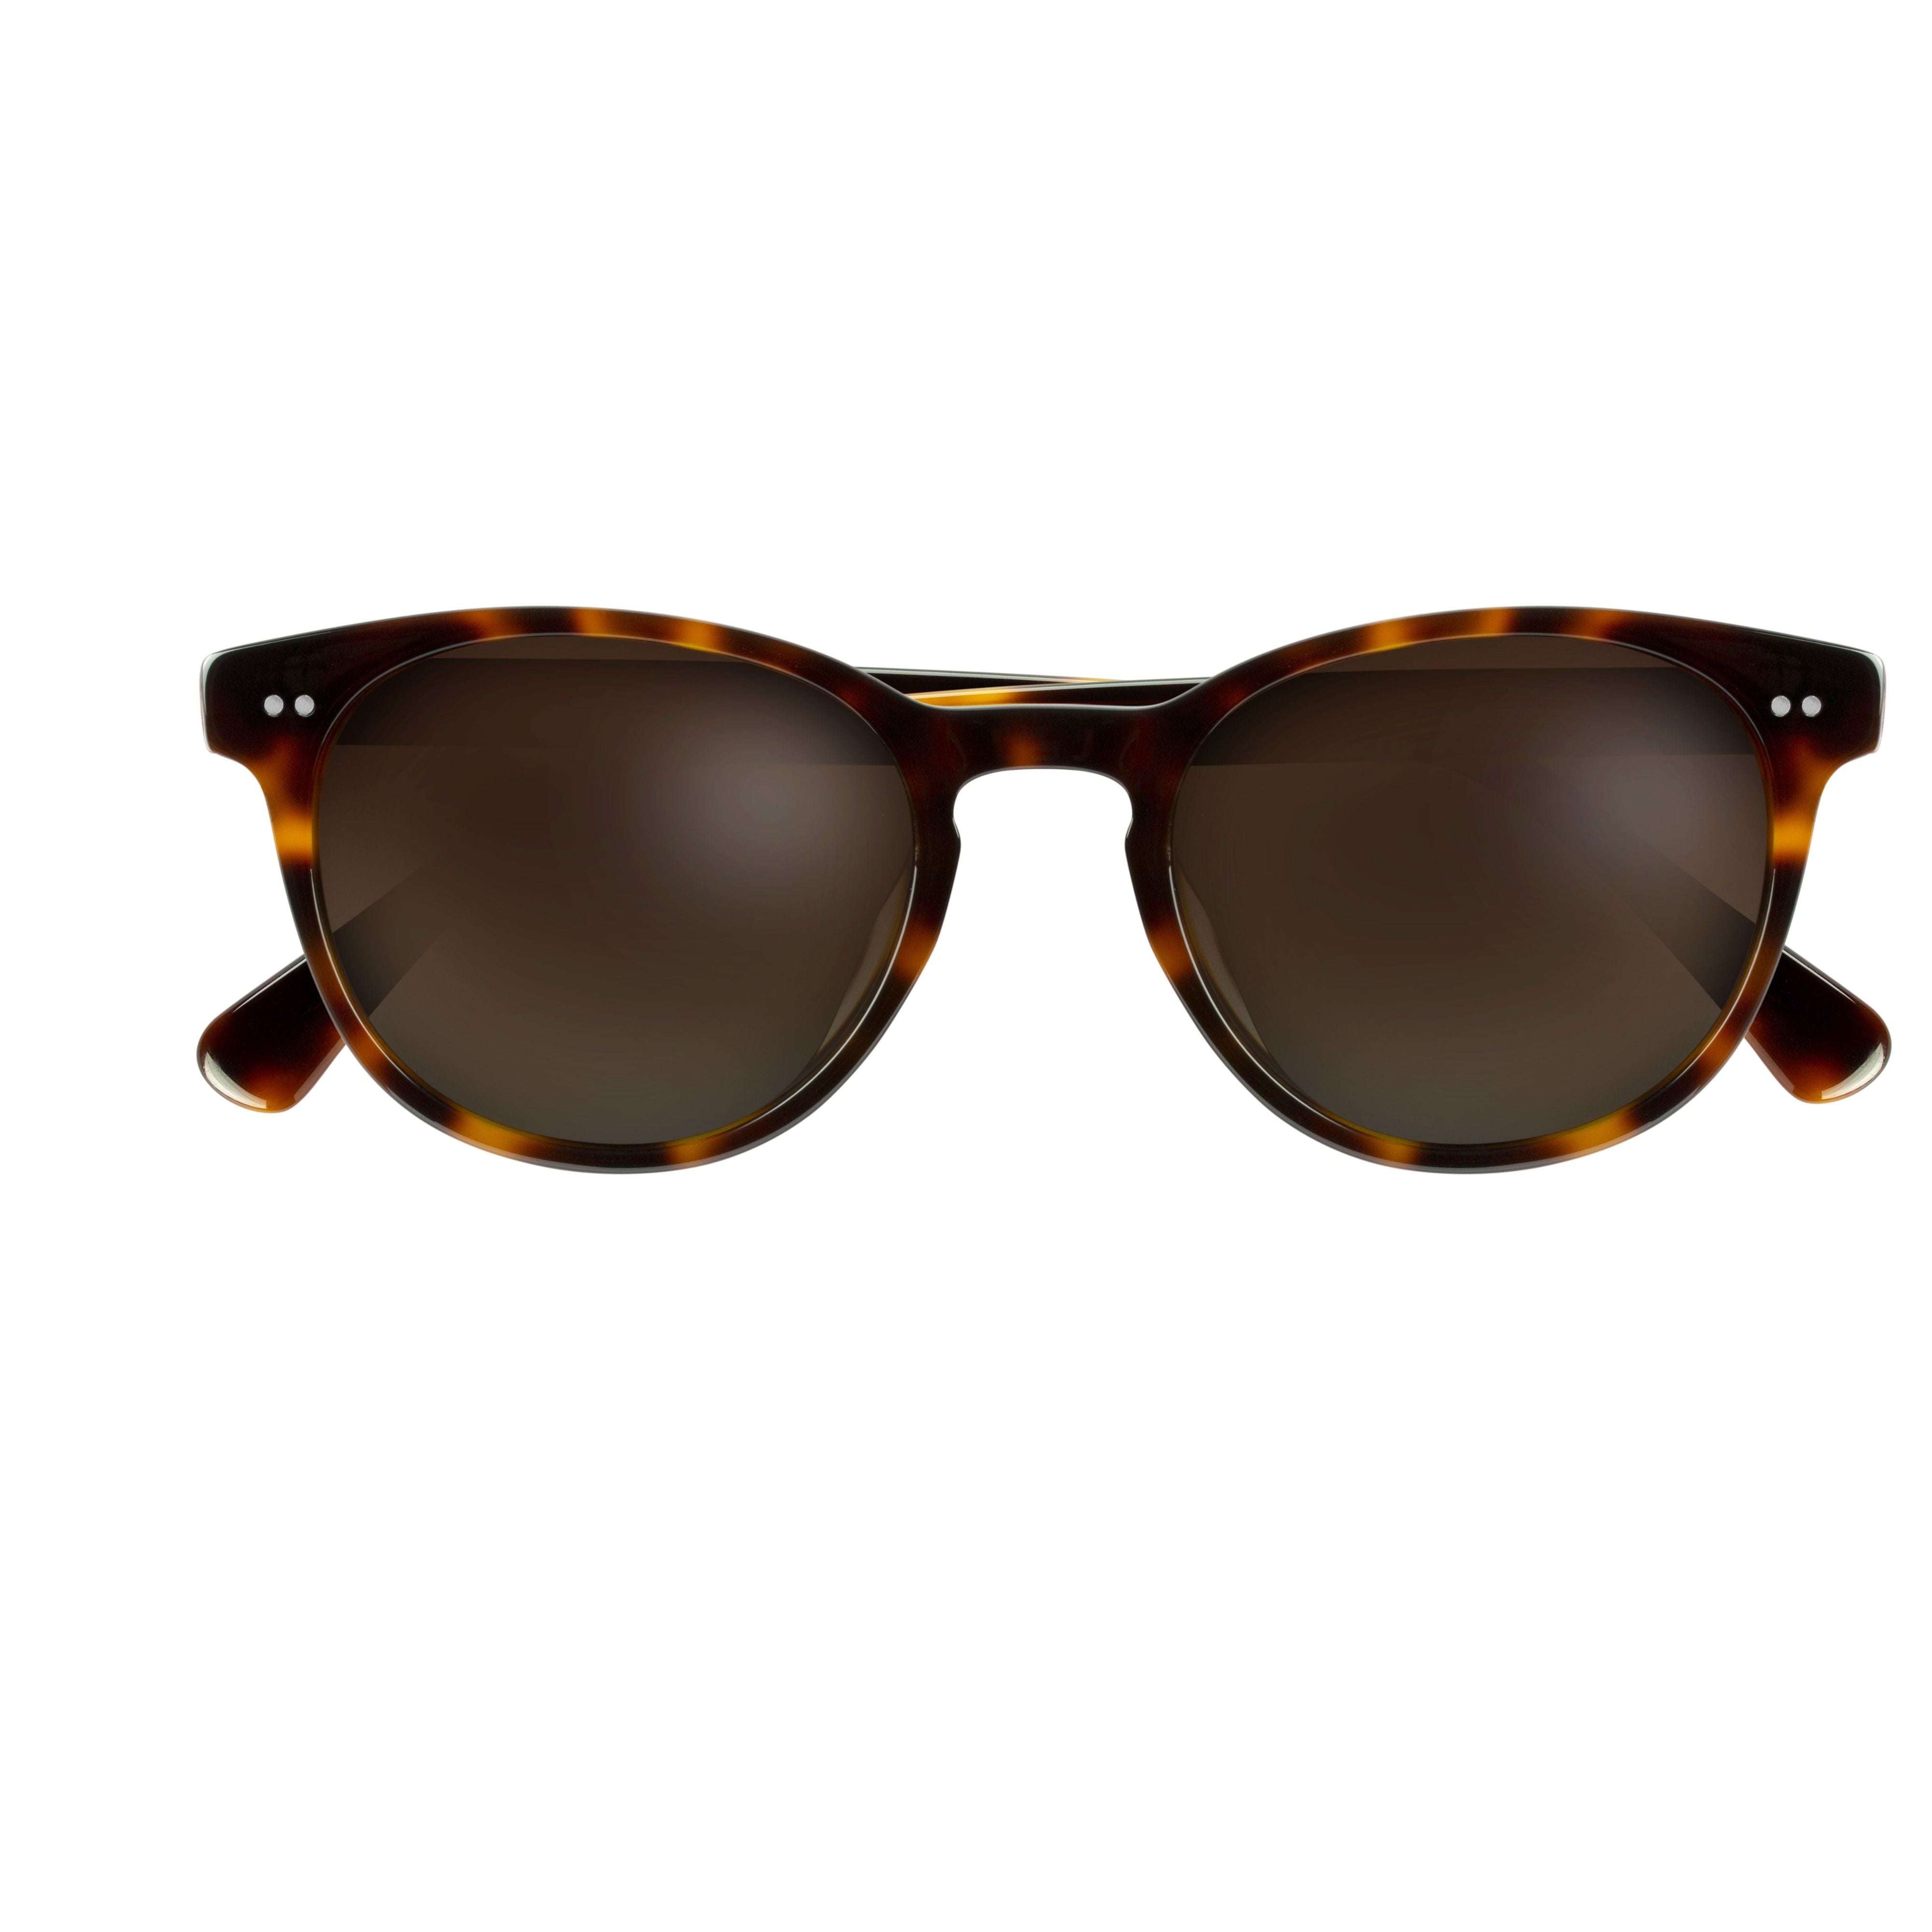 Morzine - Sunglasses